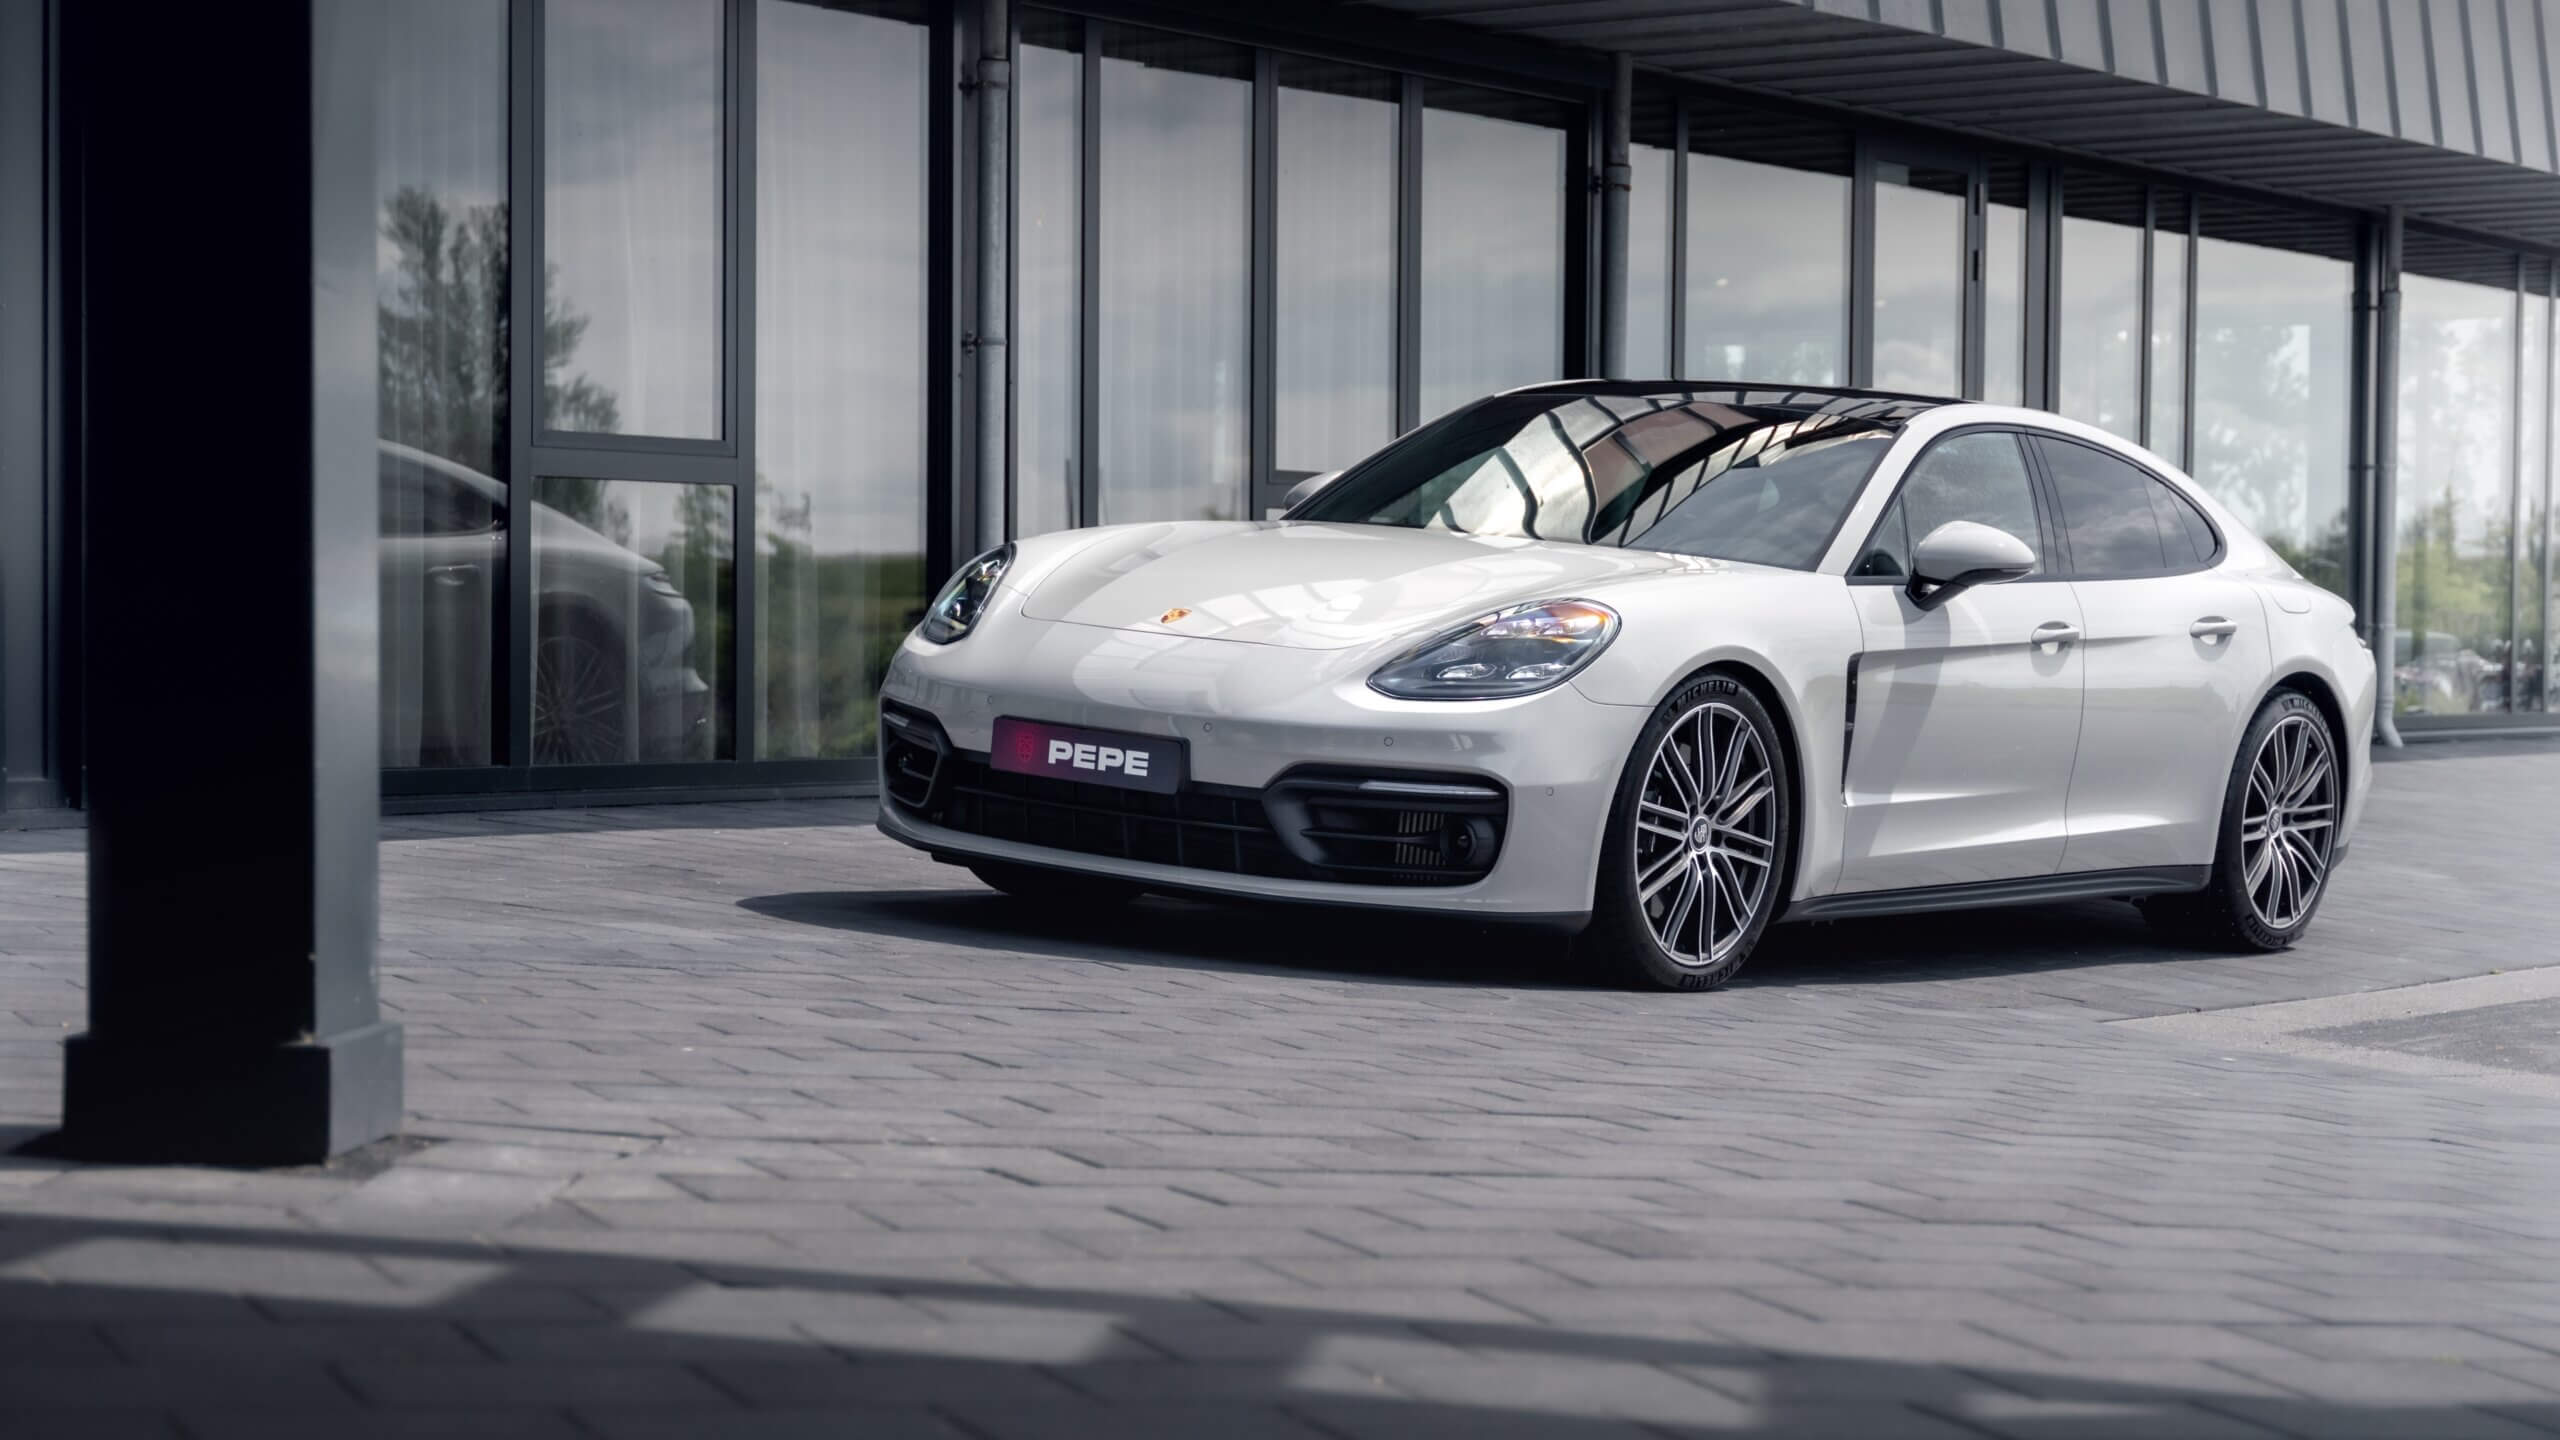 Maatwerk Porsche bedrijfswagens van hoogwaardige kwaliteit voor zakelijke mobiliteit in Roosendaal